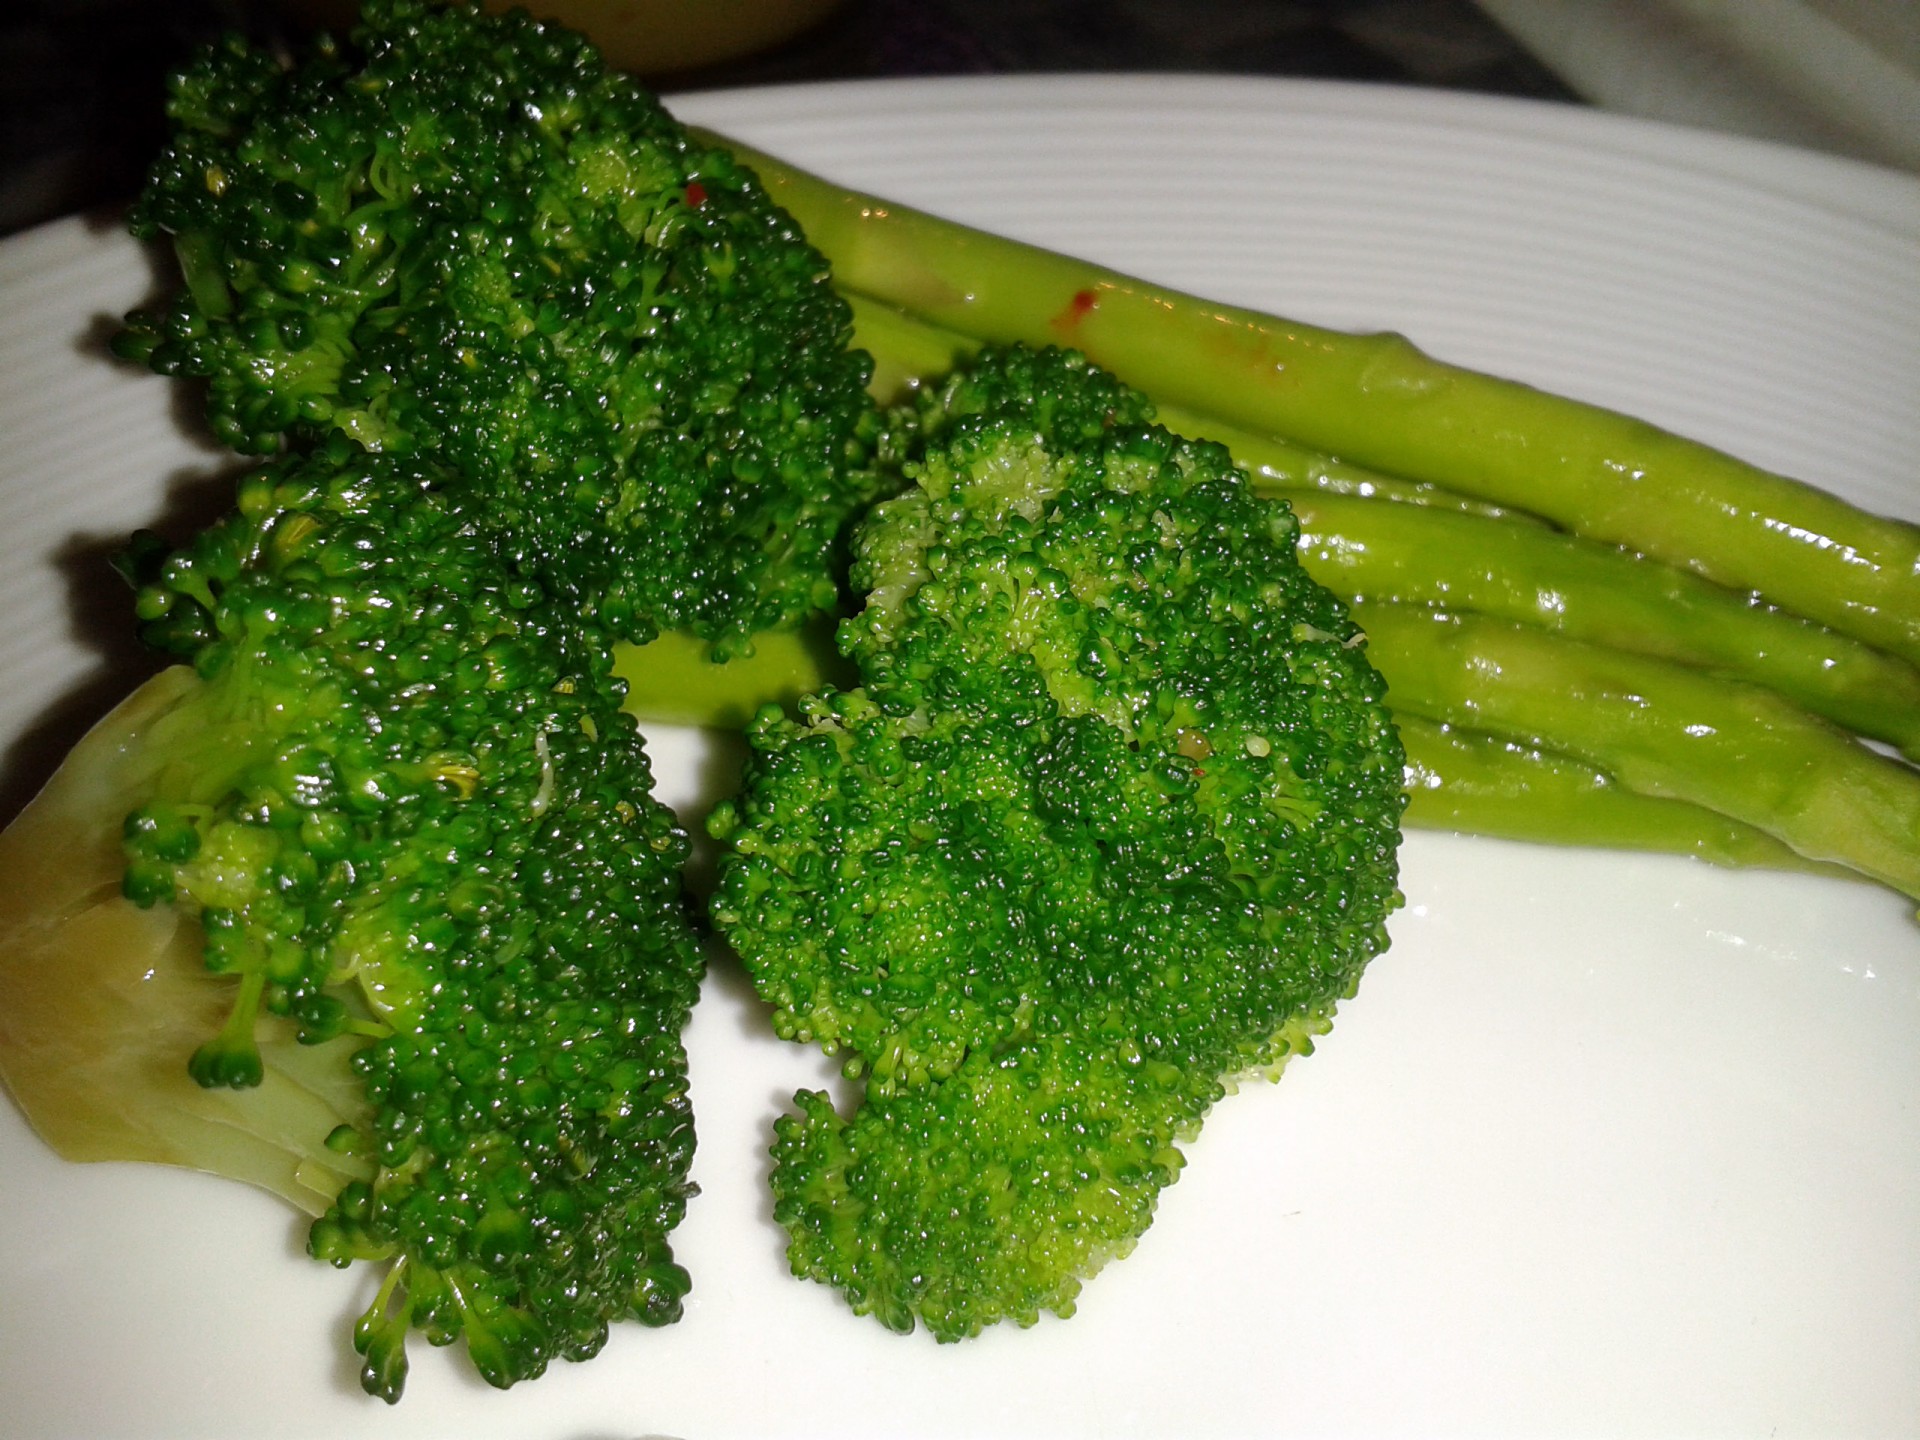 Jazzed up Broccoli